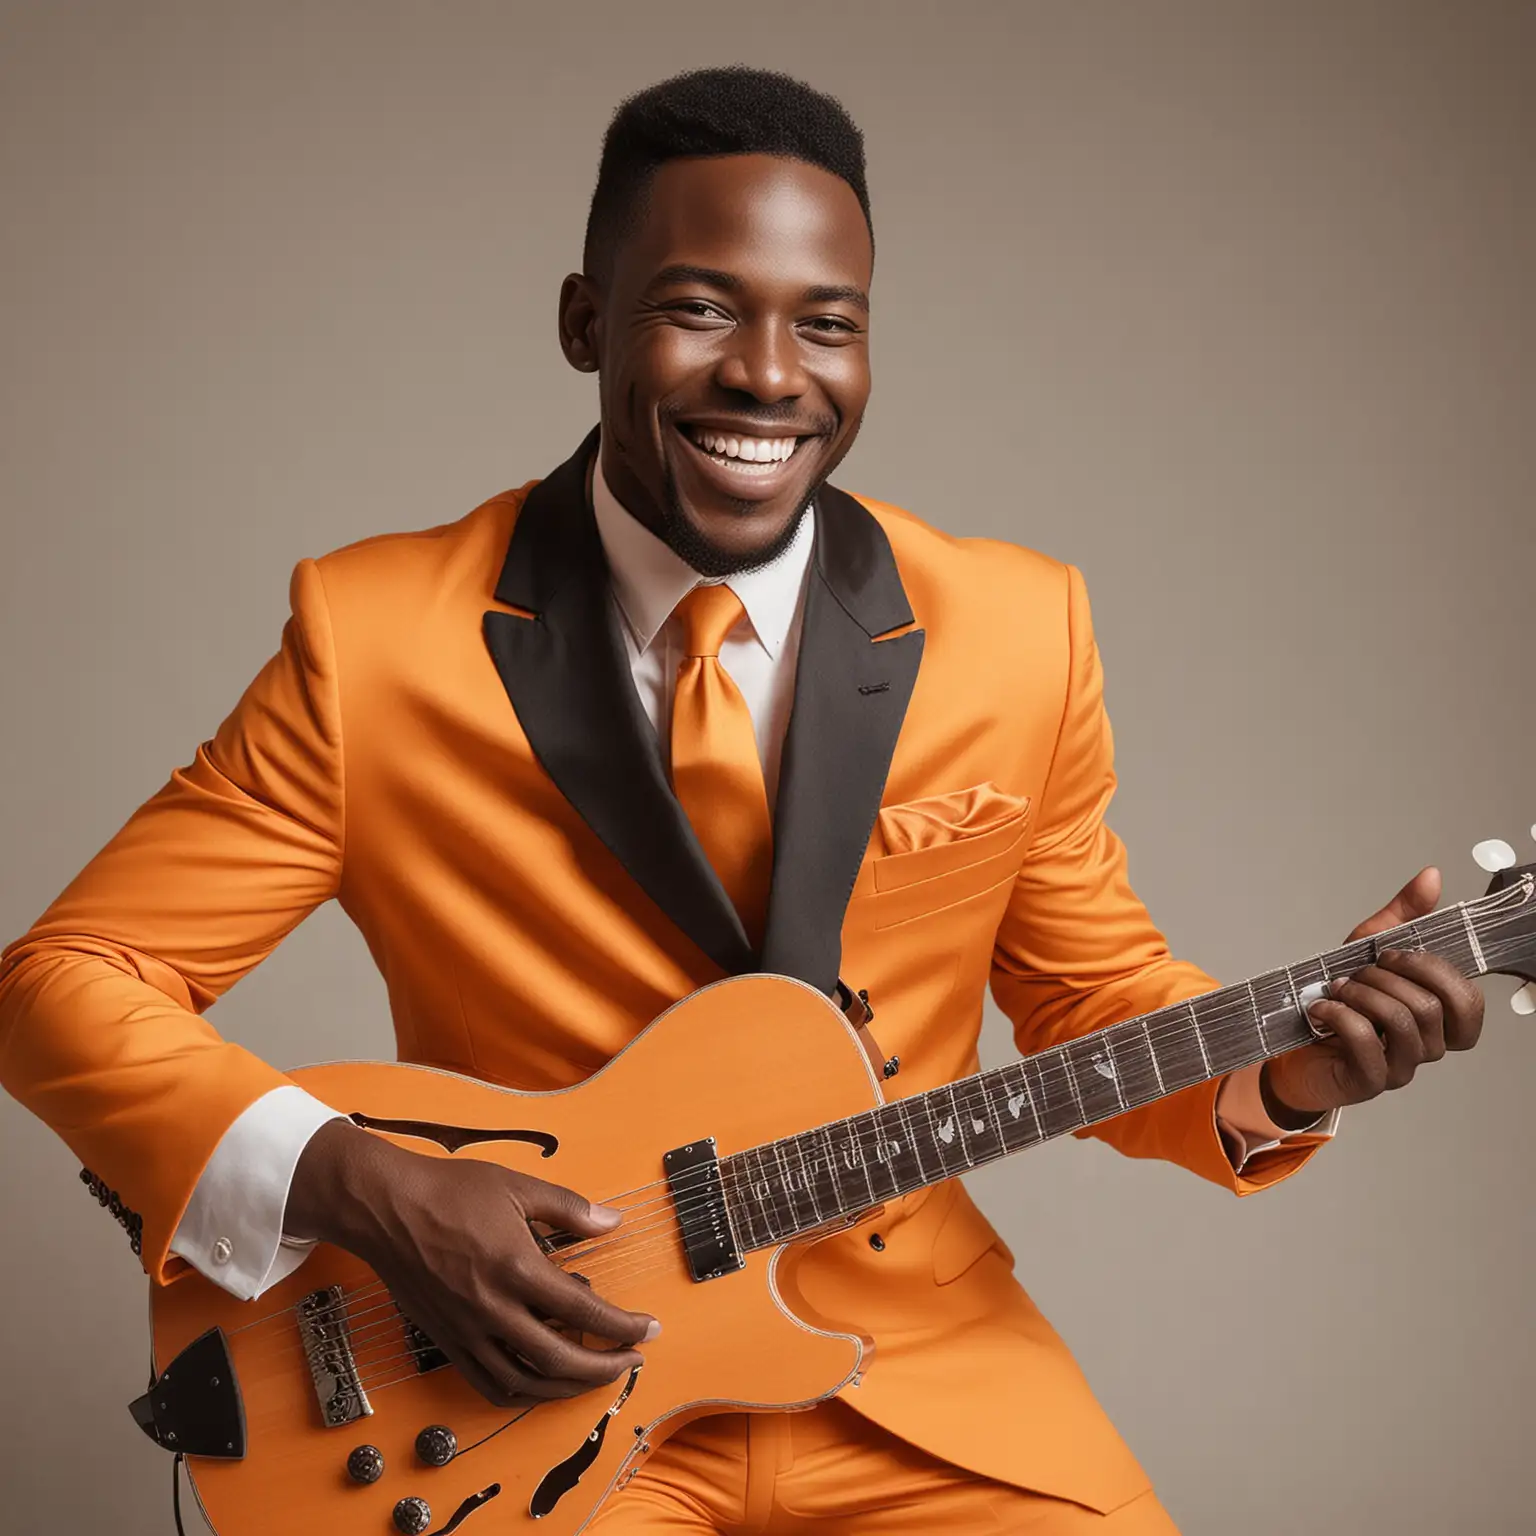 black man smiling playing music in a orange suit
